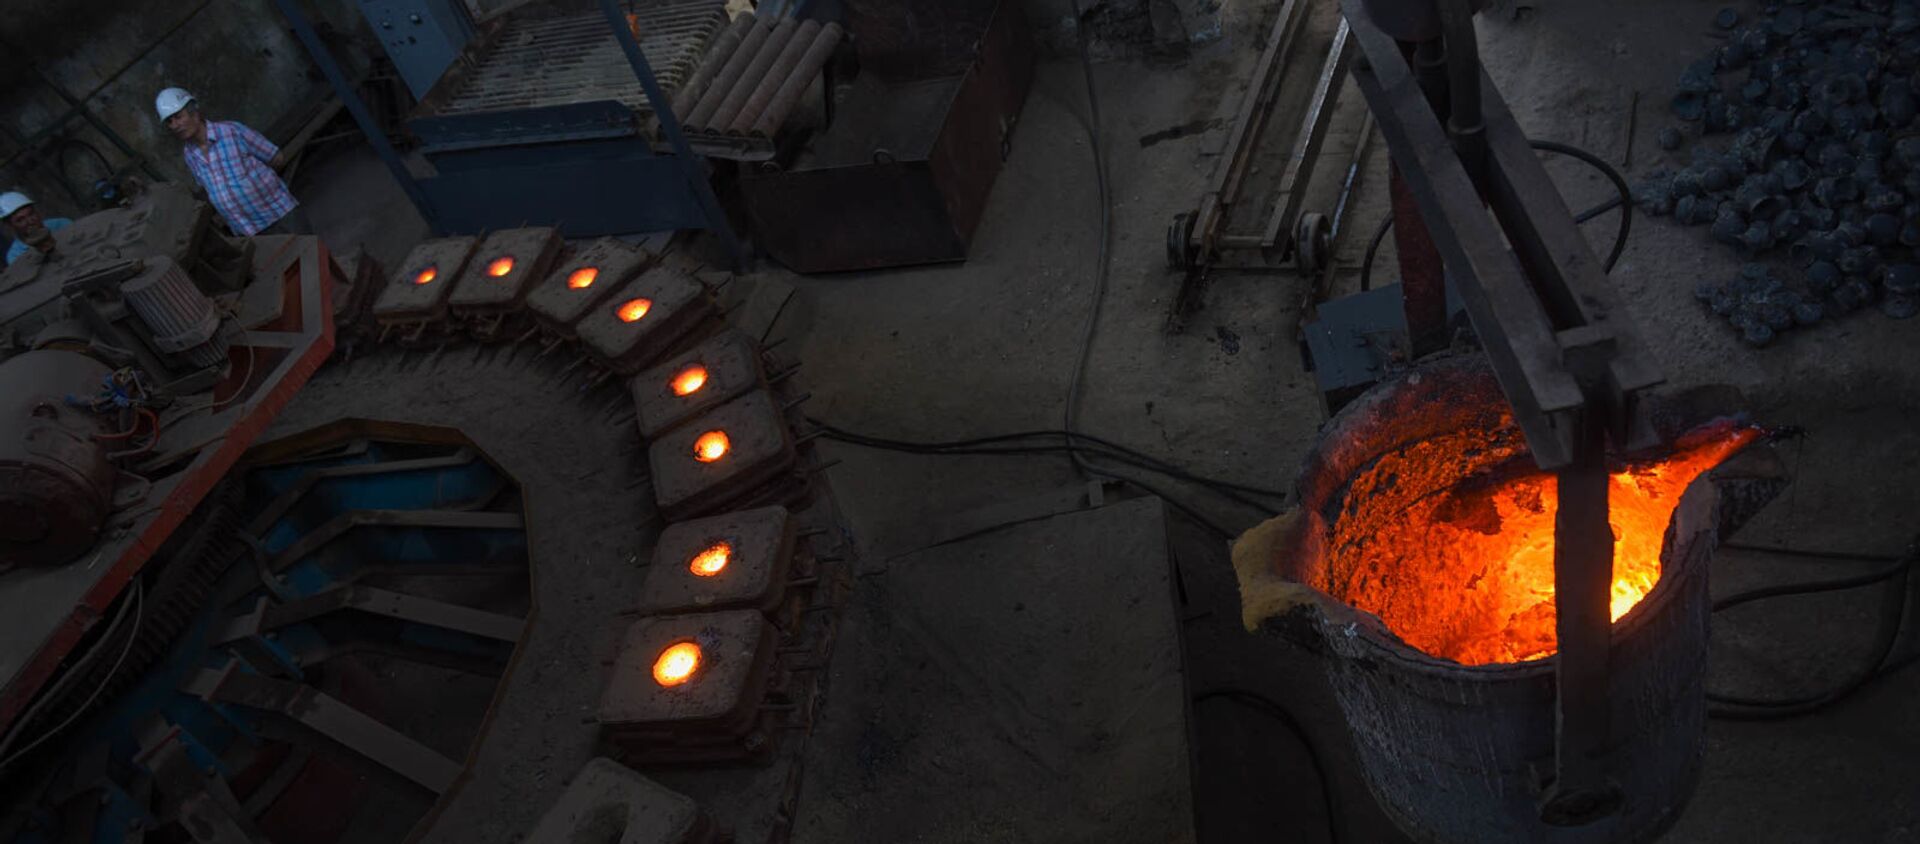 Производство шаров для рудных мельниц на медеплавильном заводе ACP, город Алаверди - Sputnik Արմենիա, 1920, 14.10.2019